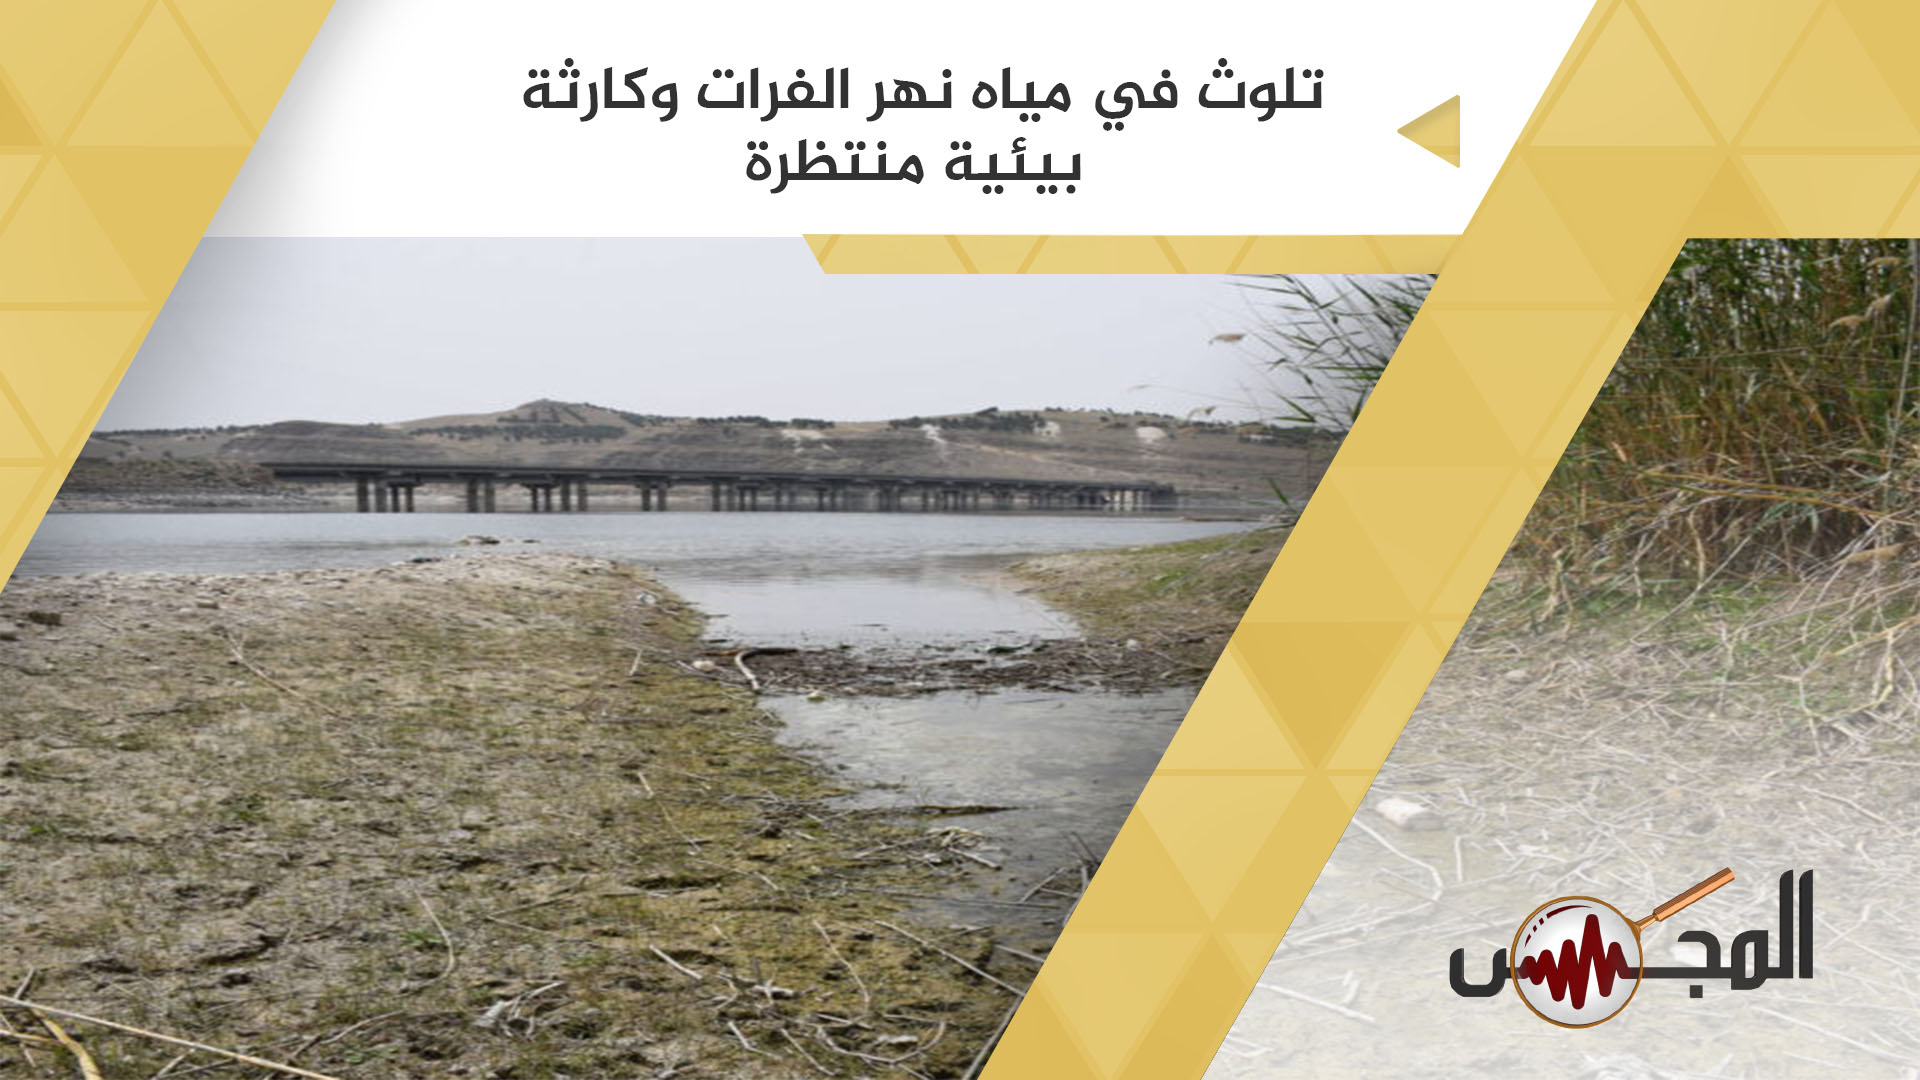 تلوث في مياه نهر الفرات وكارثة بيئية منتظرة